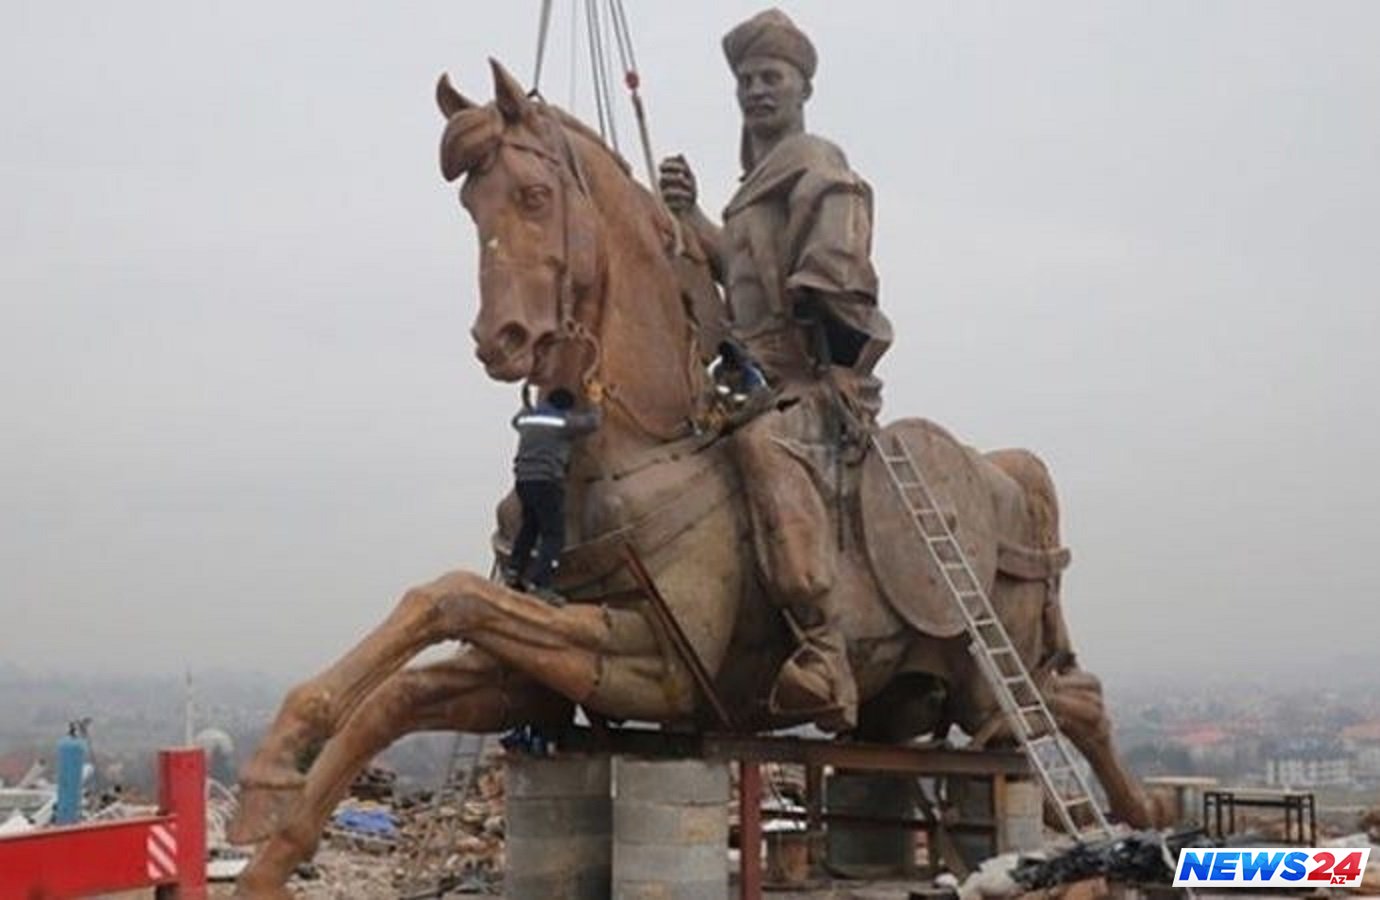 Türkiyədə Koroğluya heykəl qoyulacaq – Hündürlüyü 30 metr, ağırlığı 40 ton 